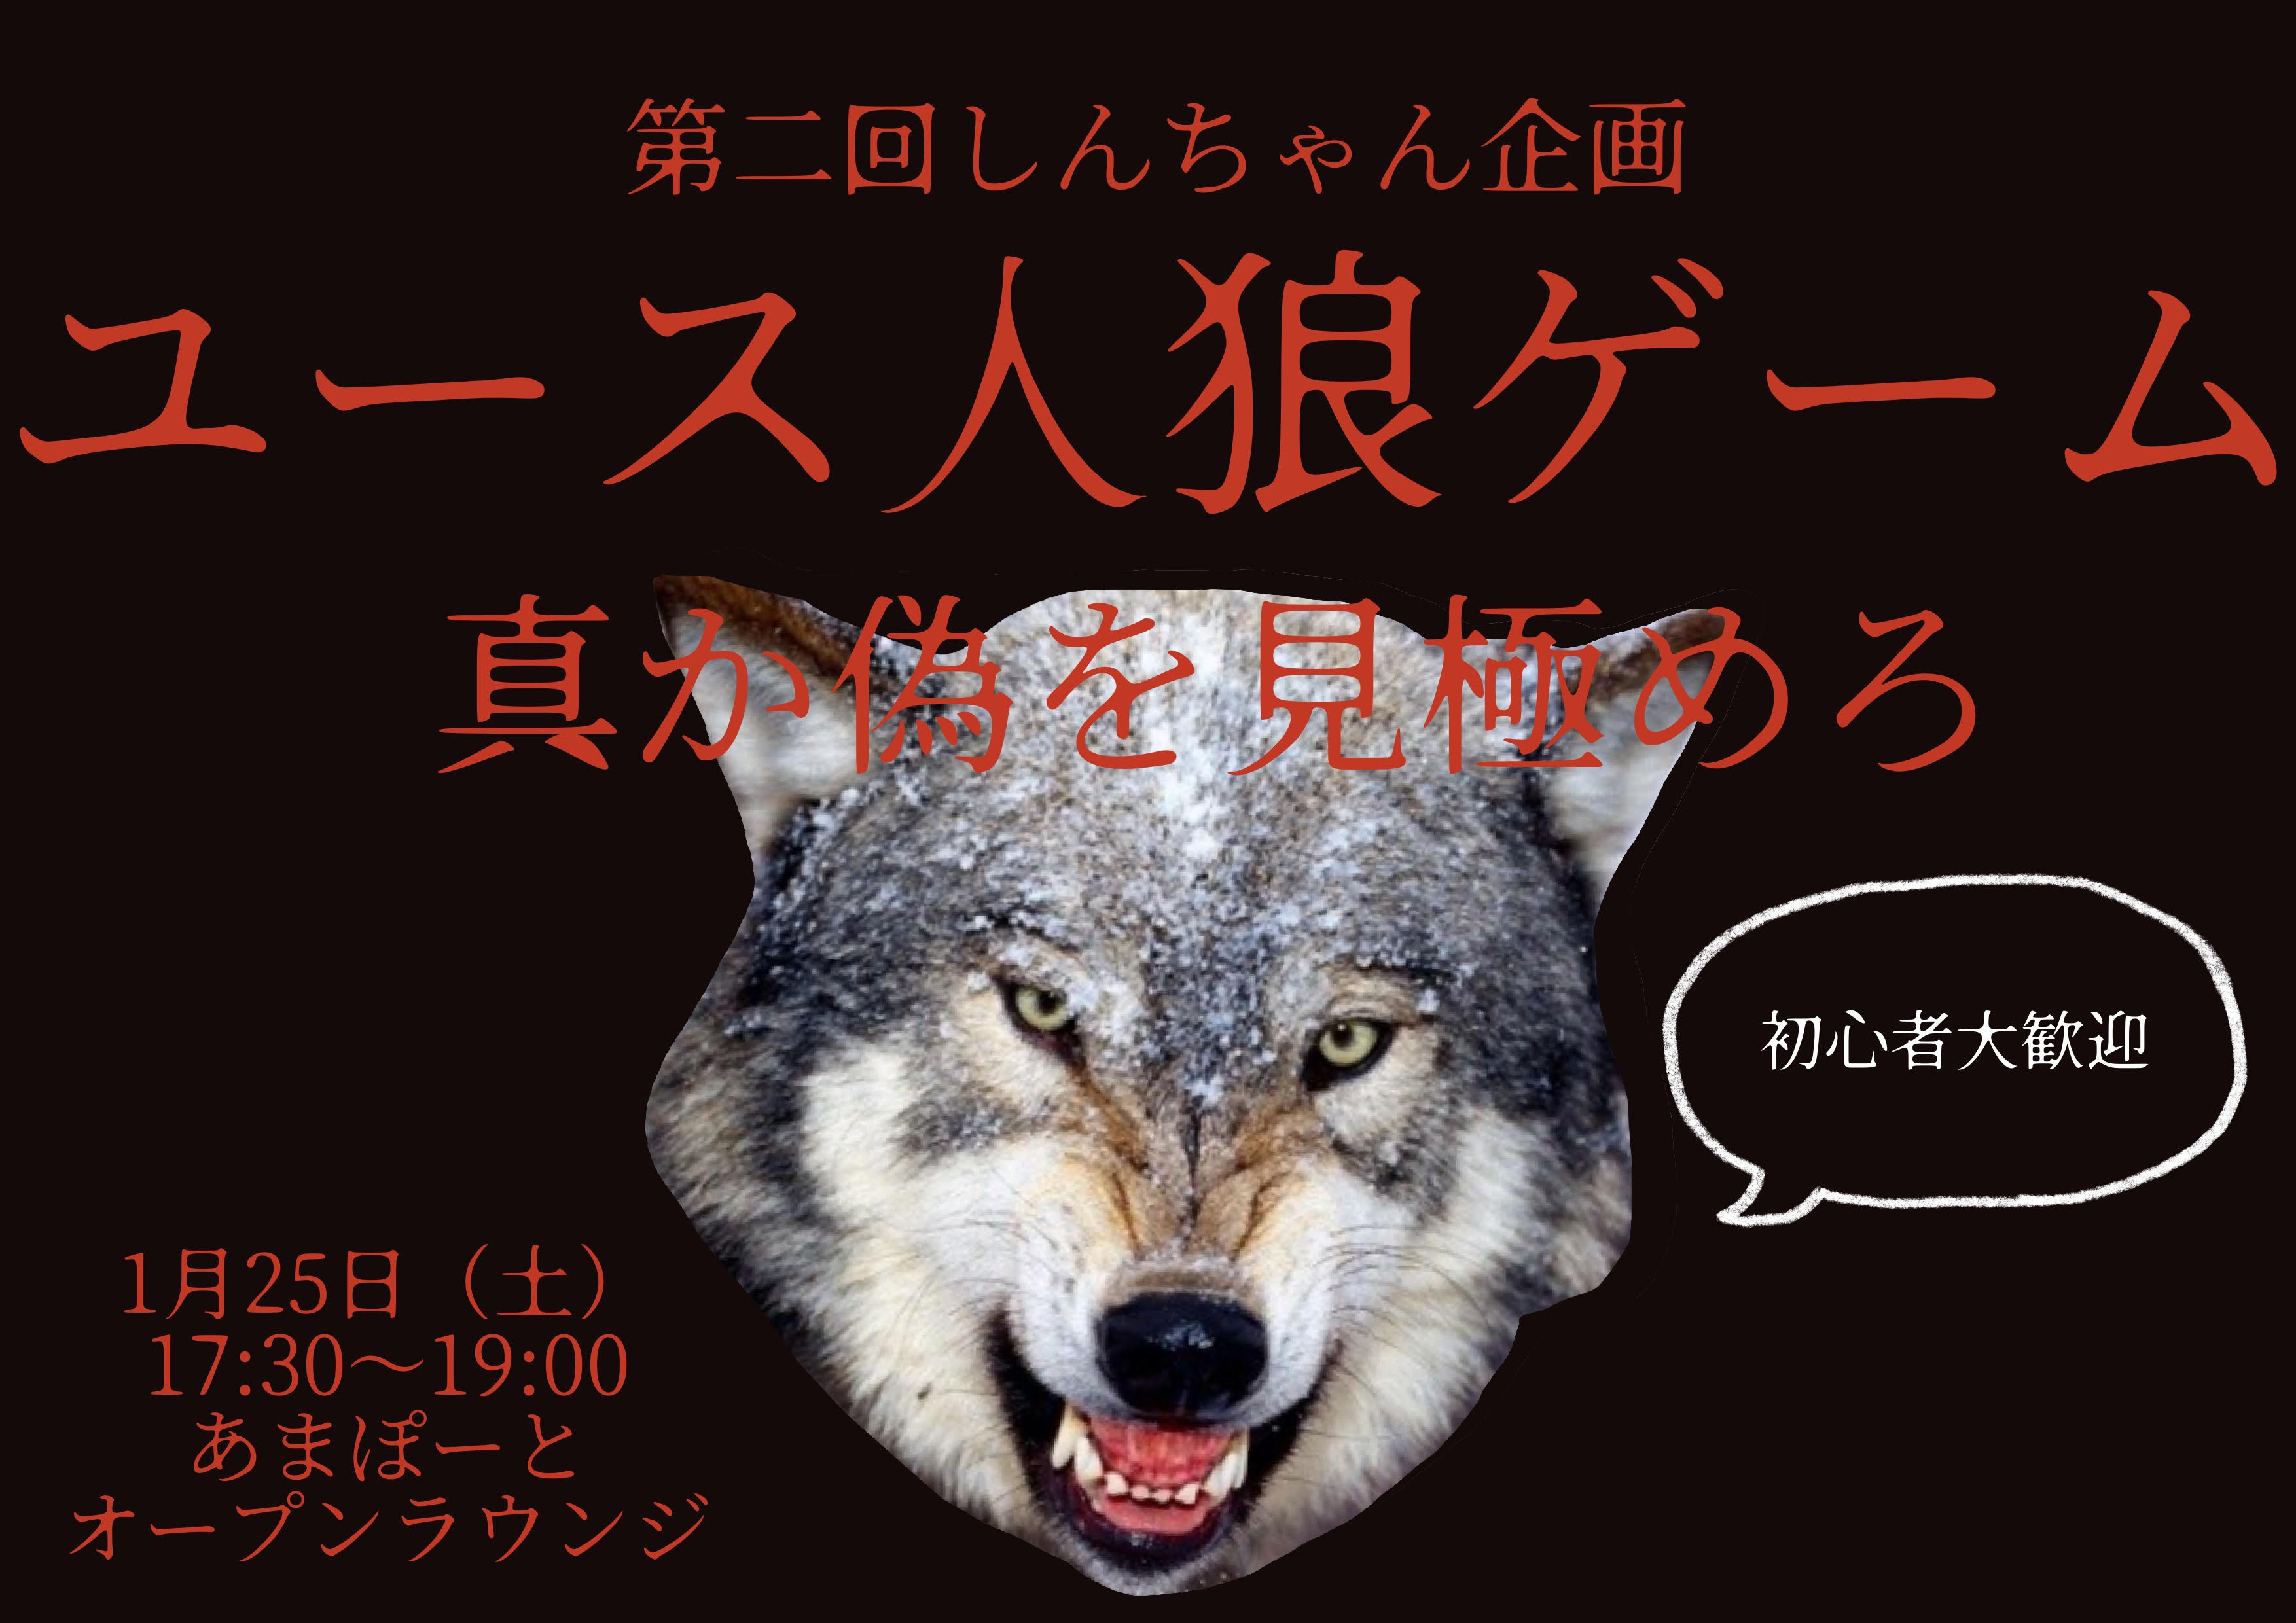 実施報告 第2回しんちゃん企画人狼ゲーム 尼崎市立ユース交流センター